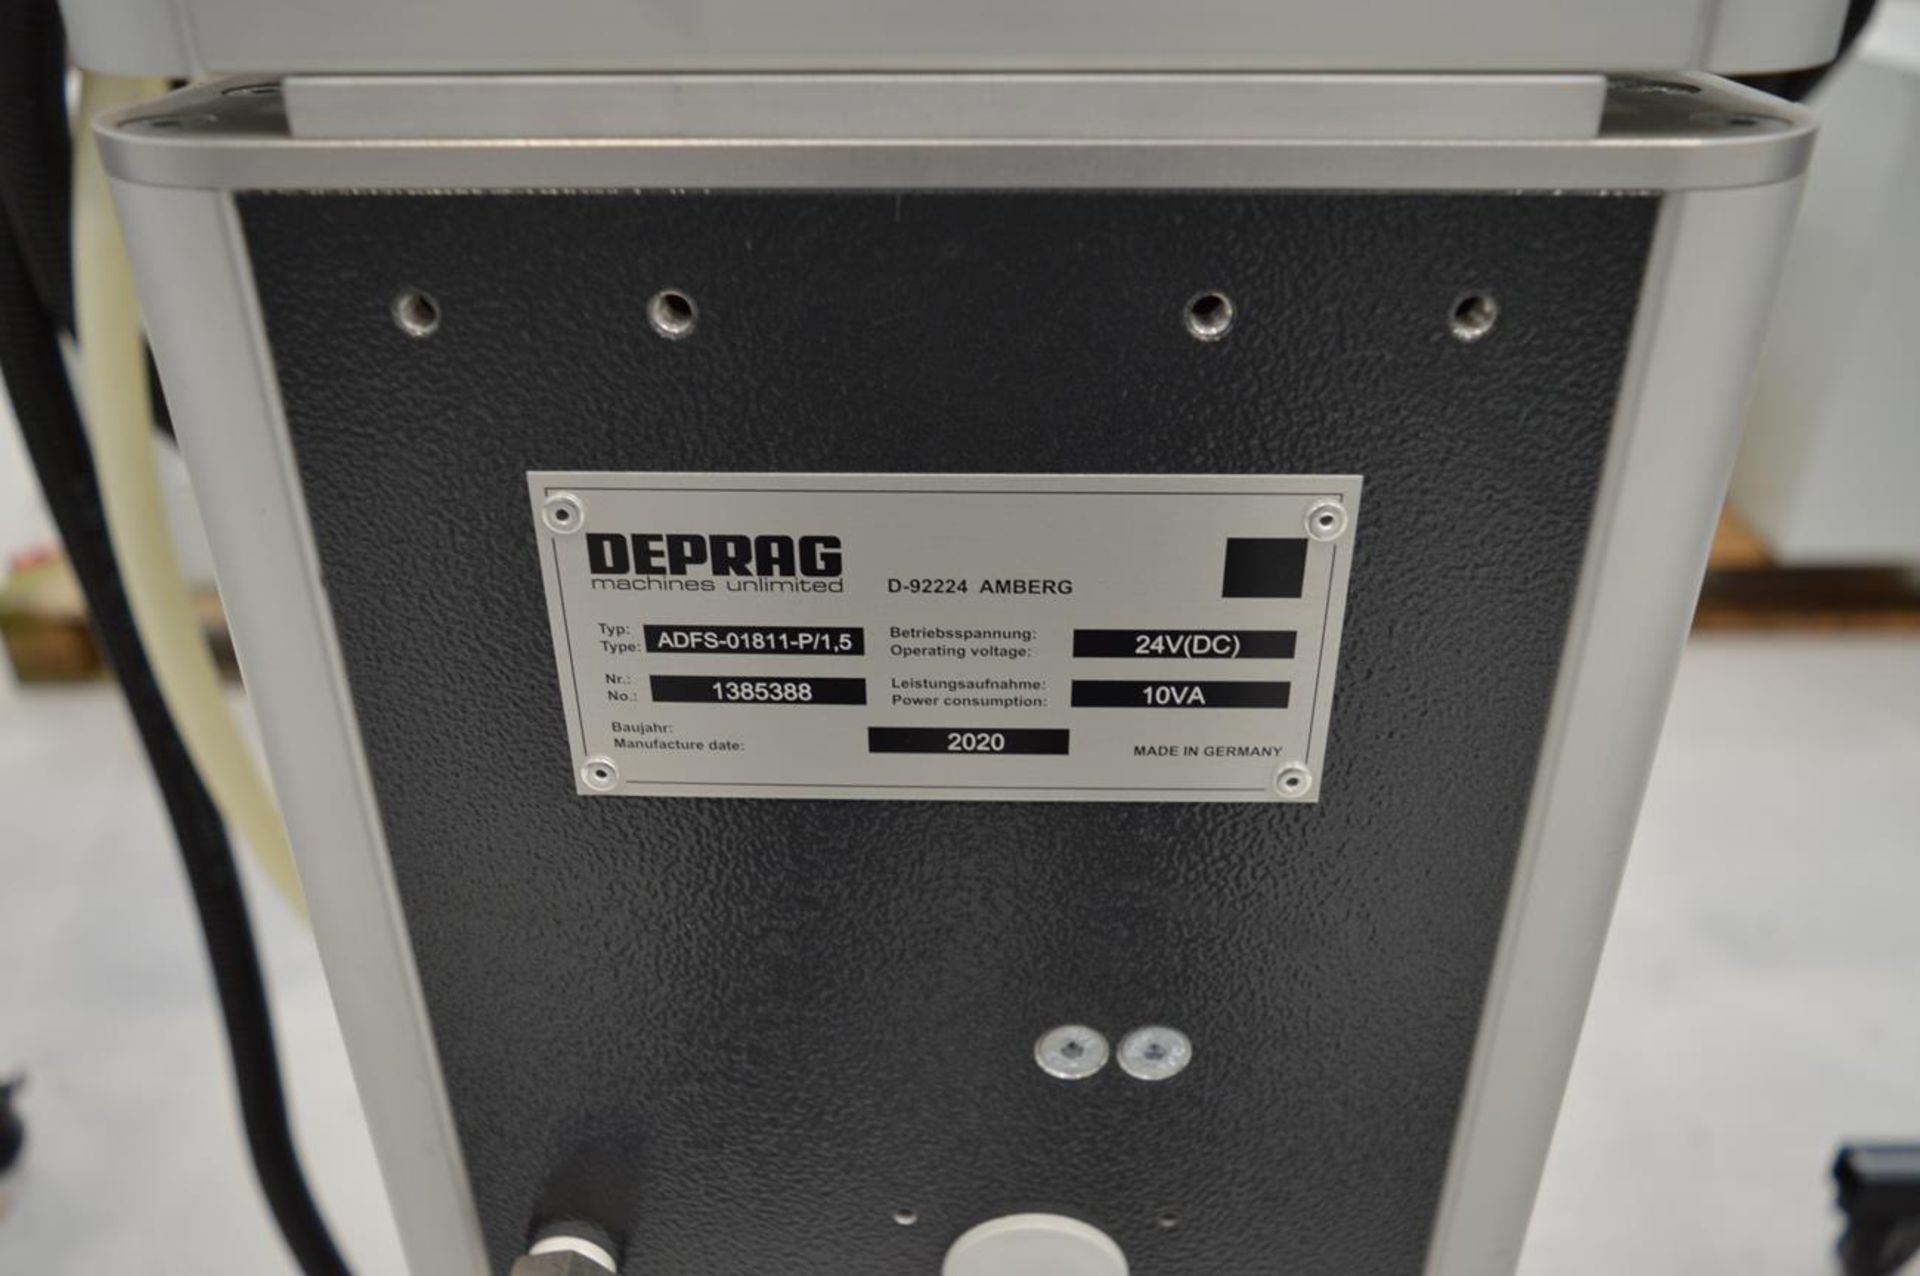 Deprag, ADFS-01811-P/1.5 linear stud feeder, Serial No. 1385388 (DOM: 2020) - Image 4 of 4